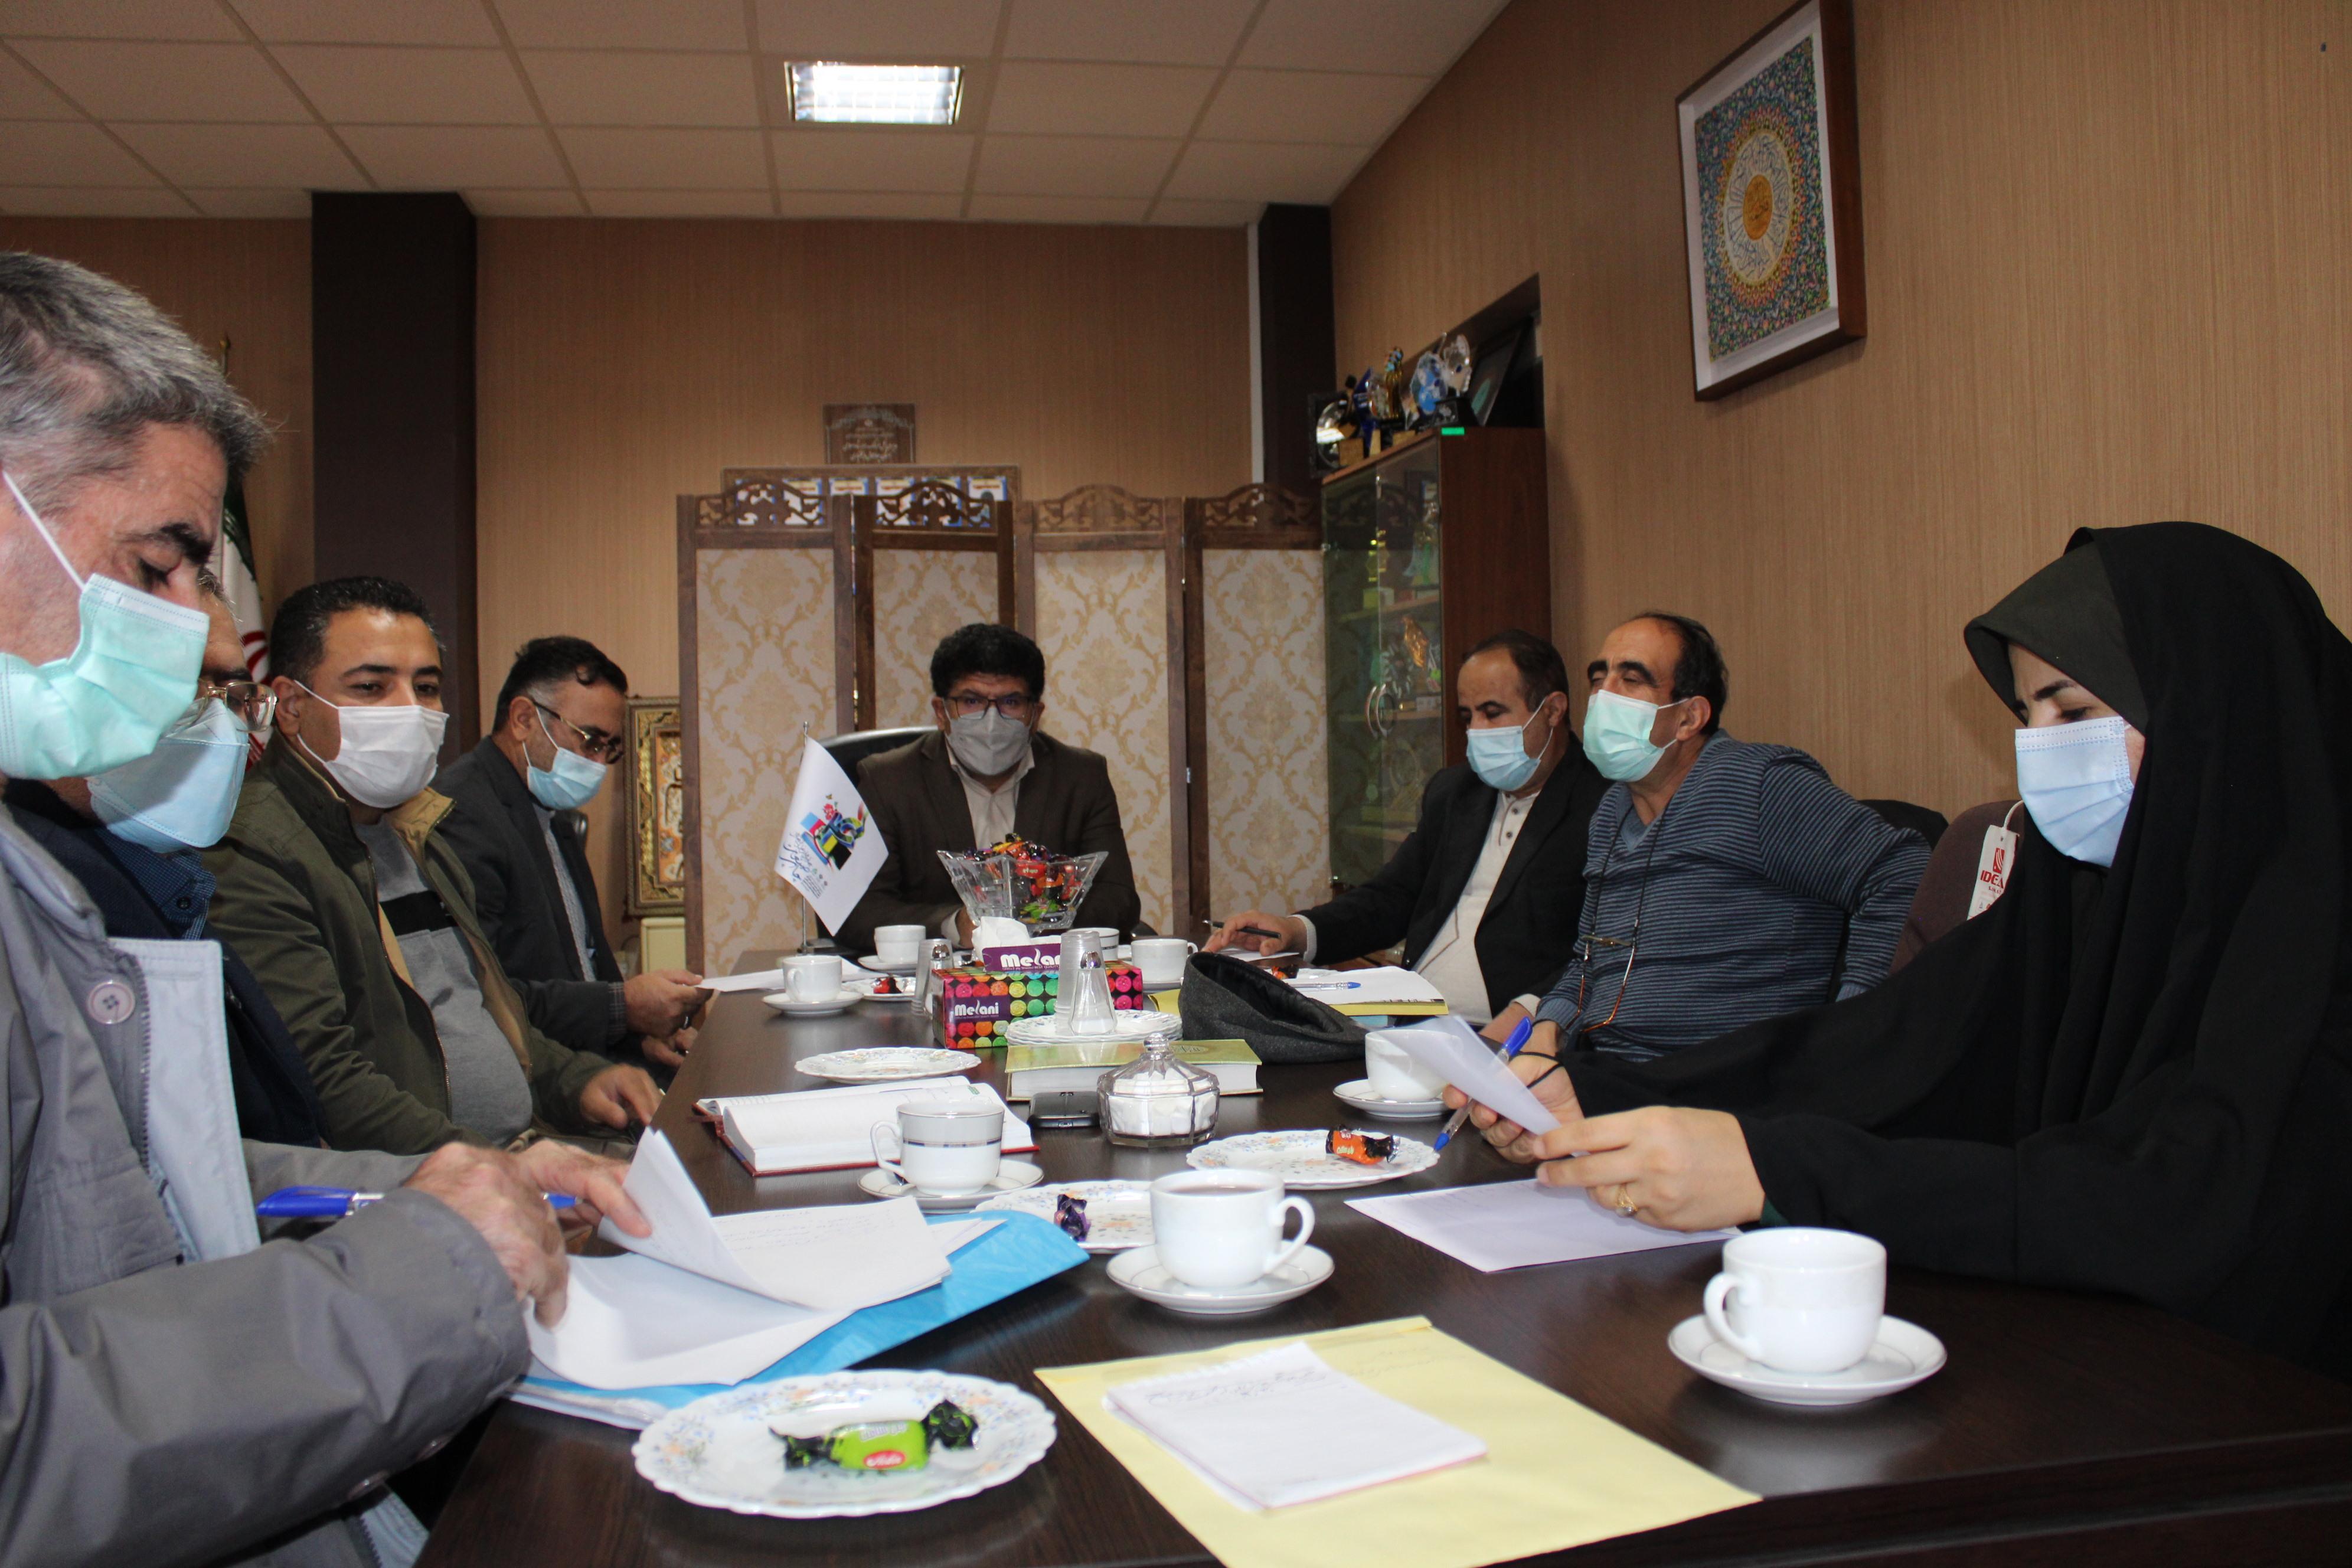 بام ایران میزبان همایش تجلیل از فعالان صنعت چاپ